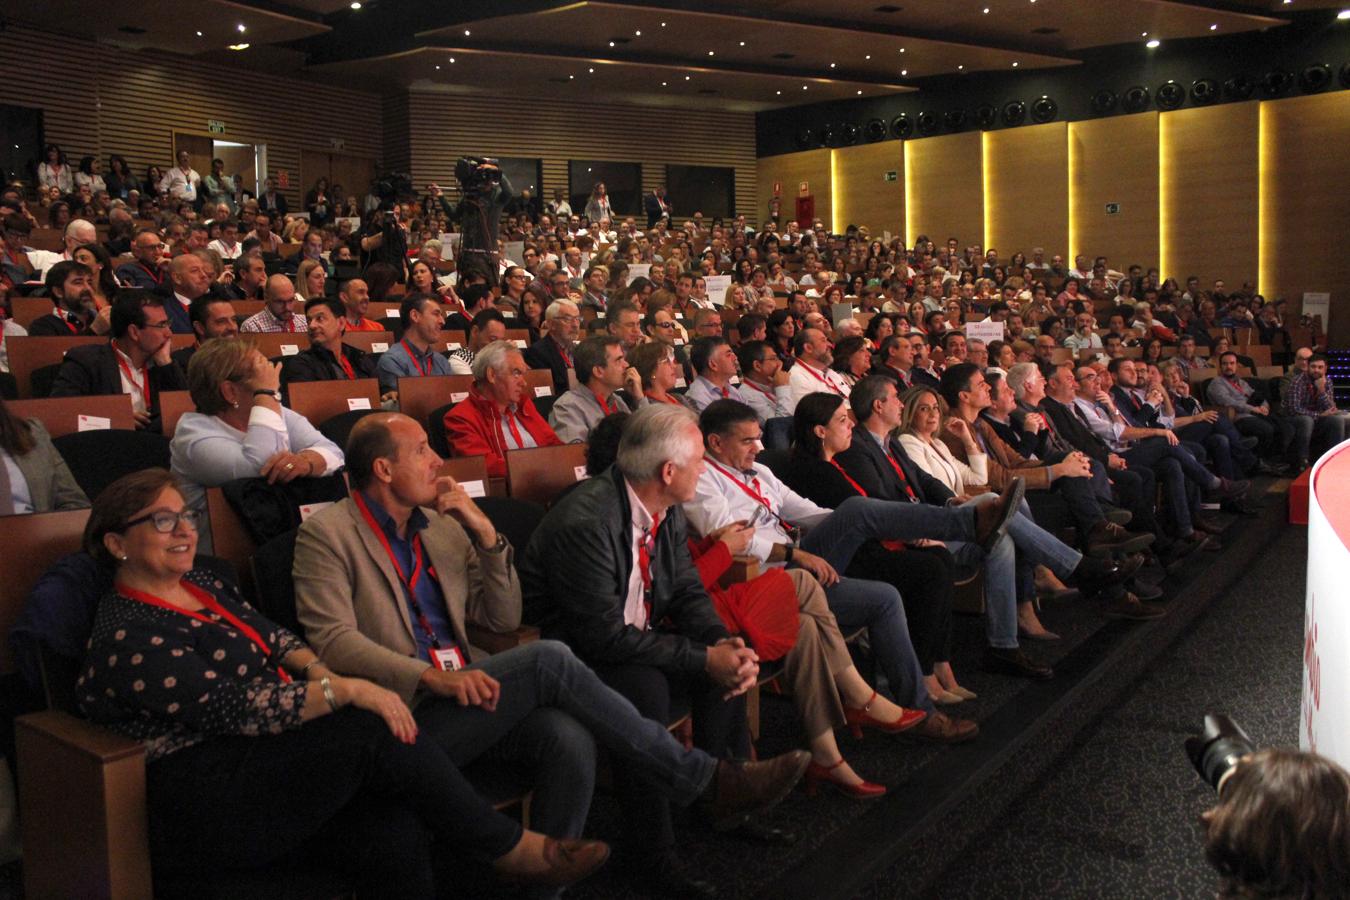 La inauguración del XI Congreso Regional del PSOE, en imágenes